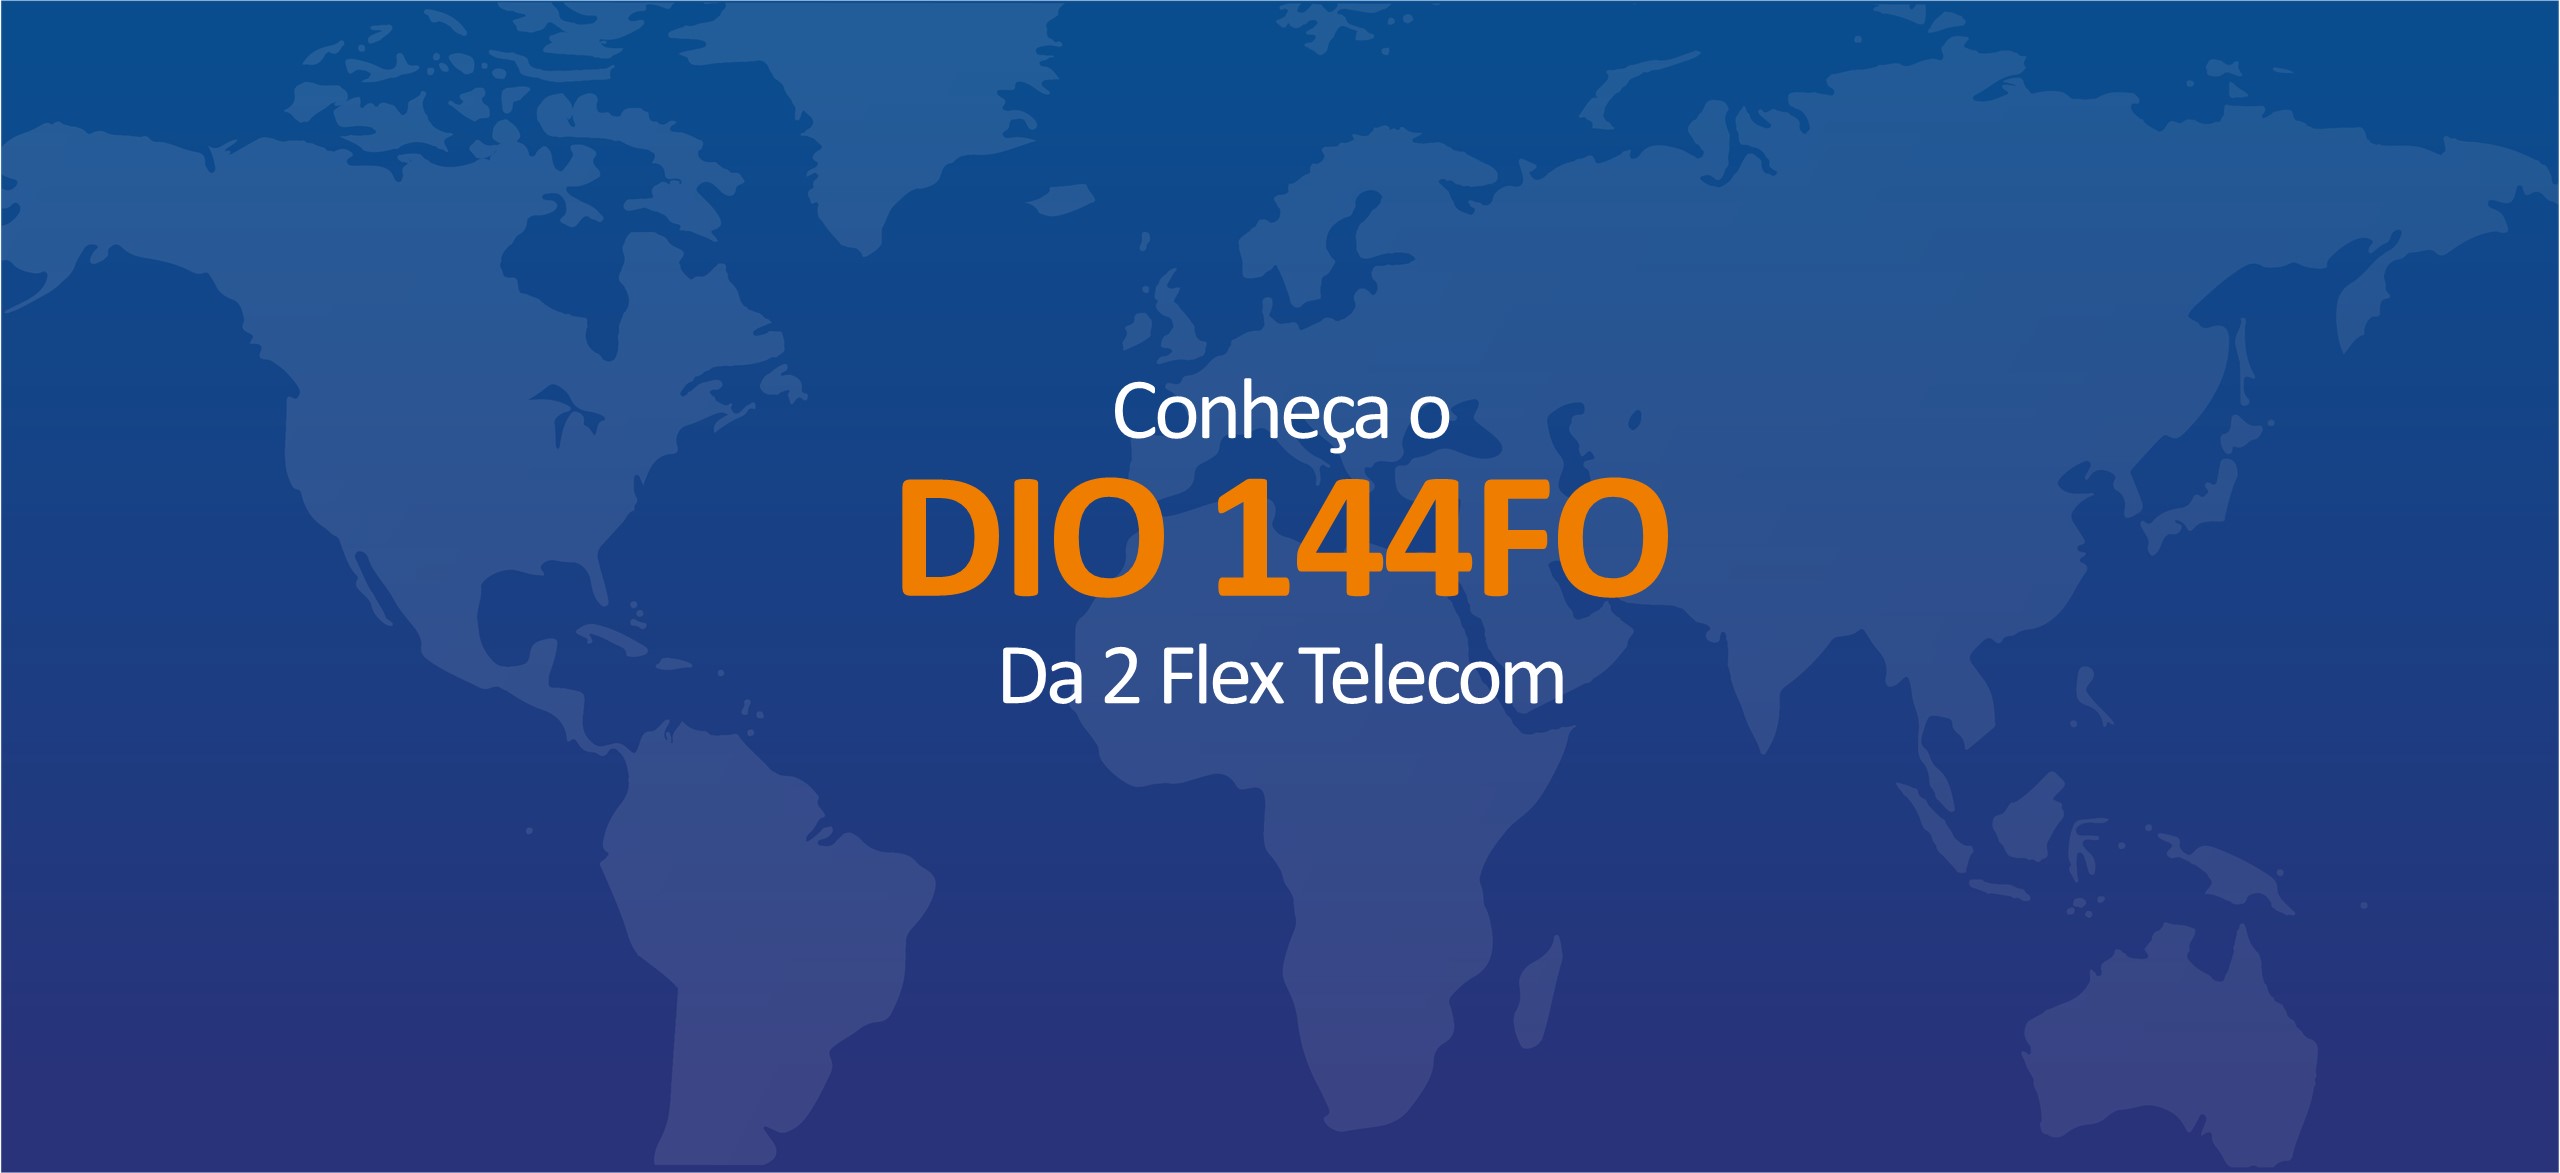 Conheça o Distribuidor Interno Óptico 144FO da 2 Flex Telecom